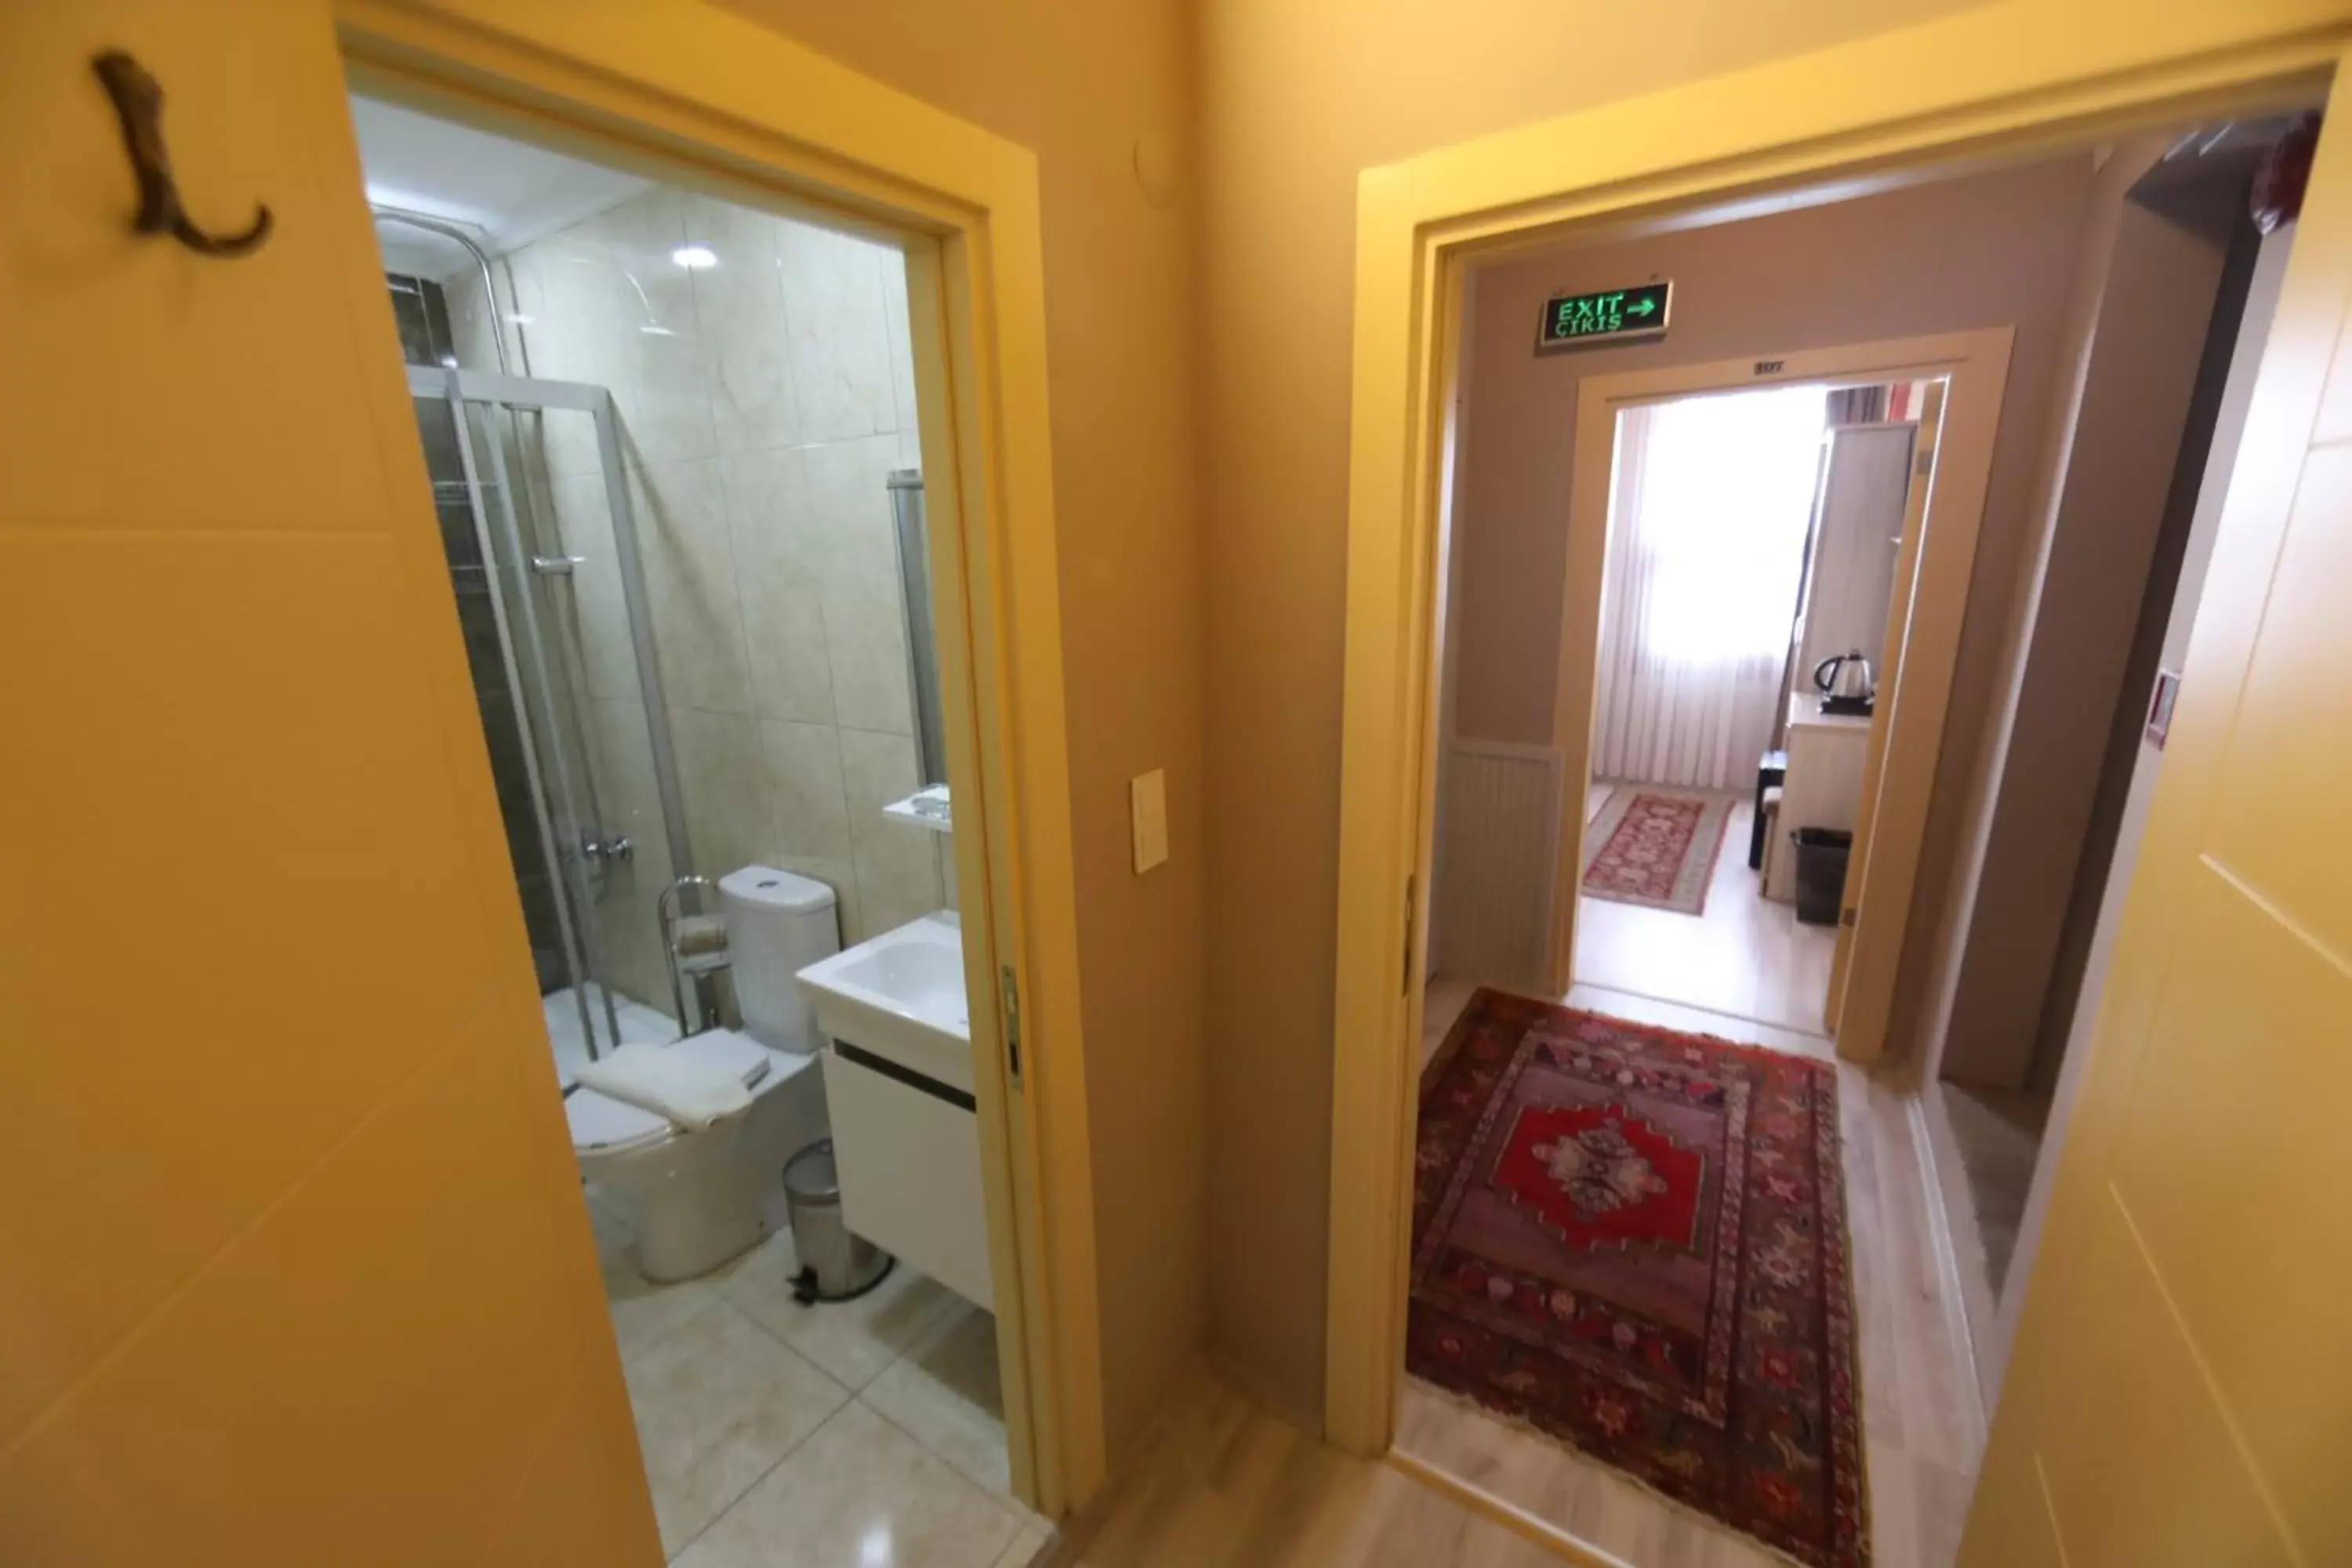 Bathroom in Sultans Royal Hotel